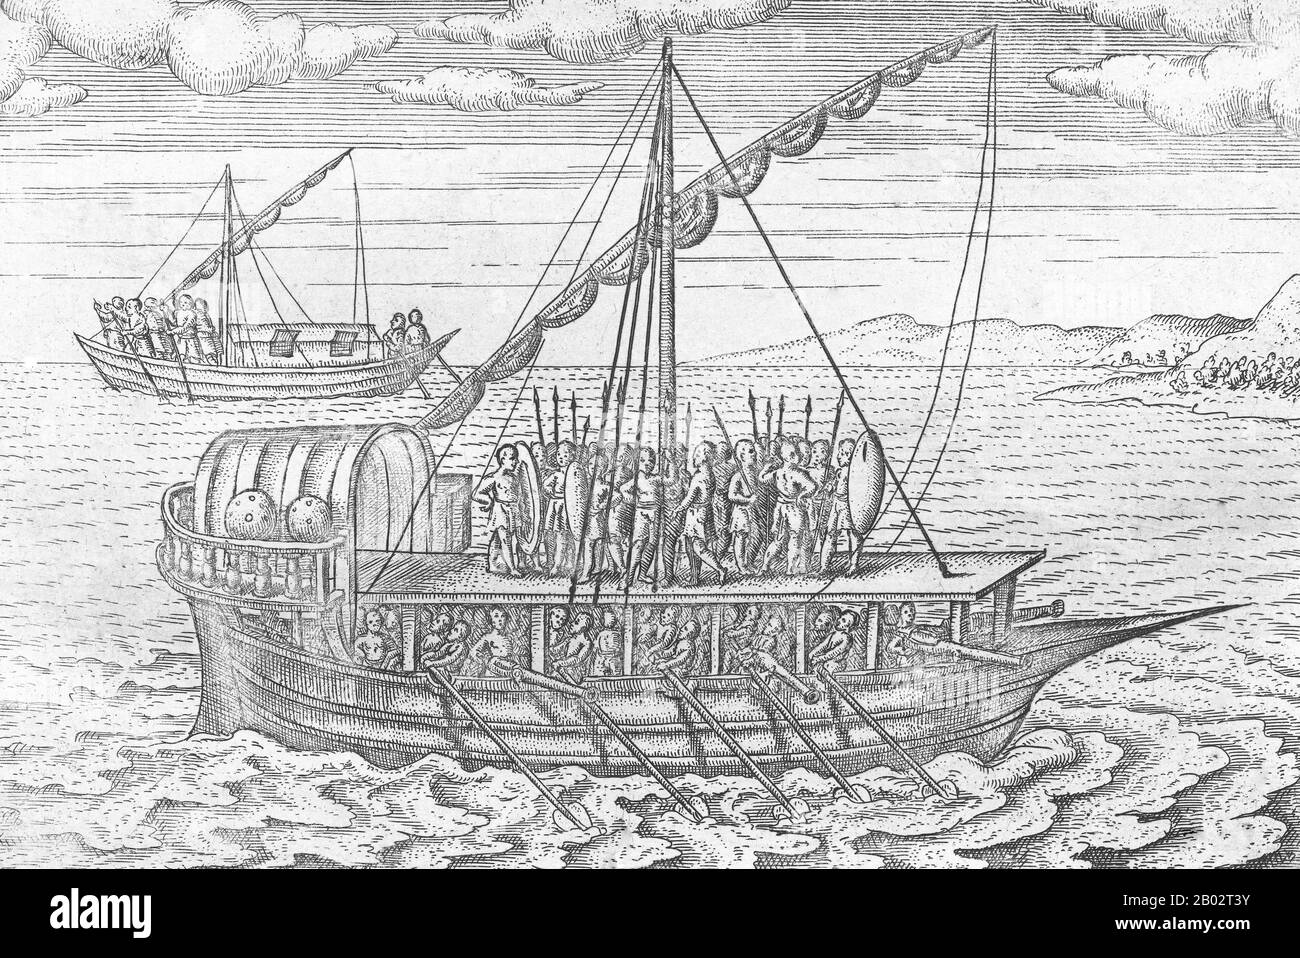 Cornelis de Houtman (2 avril 1565 – 1 septembre 1599) était un explorateur néerlandais qui a découvert une nouvelle route maritime de l'Europe vers l'Indonésie et a réussi à entamer le commerce néerlandais des épices. À l'époque, l'Empire portugais détenait un monopole sur le commerce des épices, et le voyage était une victoire symbolique pour les Néerlandais, même si le voyage lui-même était un désastre. Le voyage peut être considéré comme le début de la colonisation néerlandaise de l'Indonésie. En cinq ans, soixante-cinq navires néerlandais de plus avaient navigué vers l'est pour faire du commerce. Bientôt, les Hollandais prendront pleinement en charge le commerce des épices dans et autour de l'océan Indien. Banque D'Images